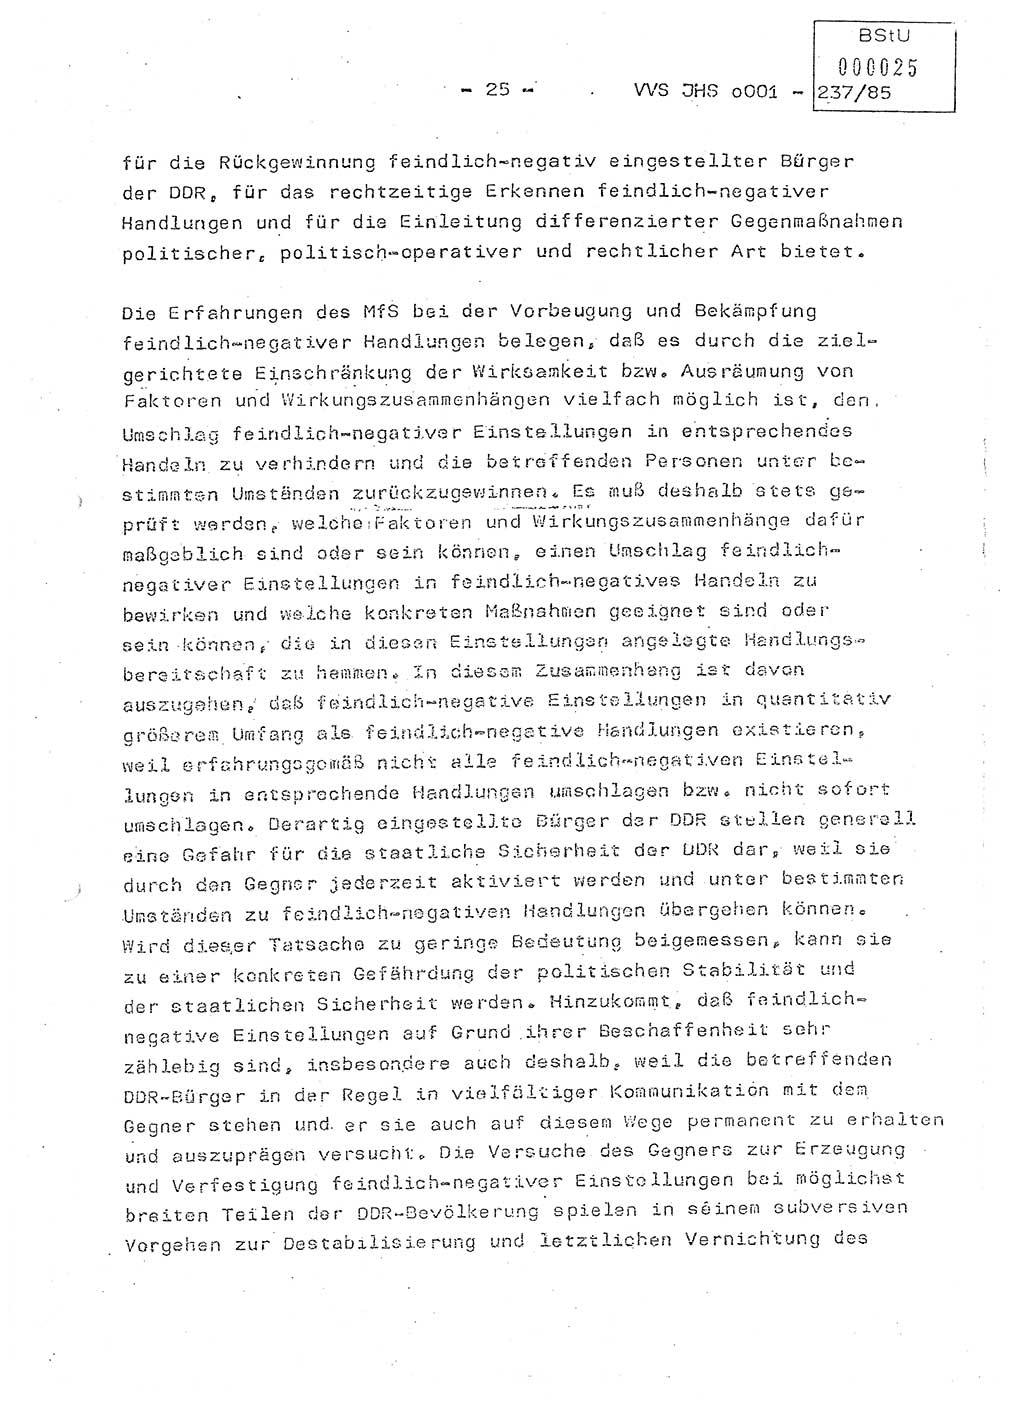 Dissertation Oberstleutnant Peter Jakulski (JHS), Oberstleutnat Christian Rudolph (HA Ⅸ), Major Horst Böttger (ZMD), Major Wolfgang Grüneberg (JHS), Major Albert Meutsch (JHS), Ministerium für Staatssicherheit (MfS) [Deutsche Demokratische Republik (DDR)], Juristische Hochschule (JHS), Vertrauliche Verschlußsache (VVS) o001-237/85, Potsdam 1985, Seite 25 (Diss. MfS DDR JHS VVS o001-237/85 1985, S. 25)